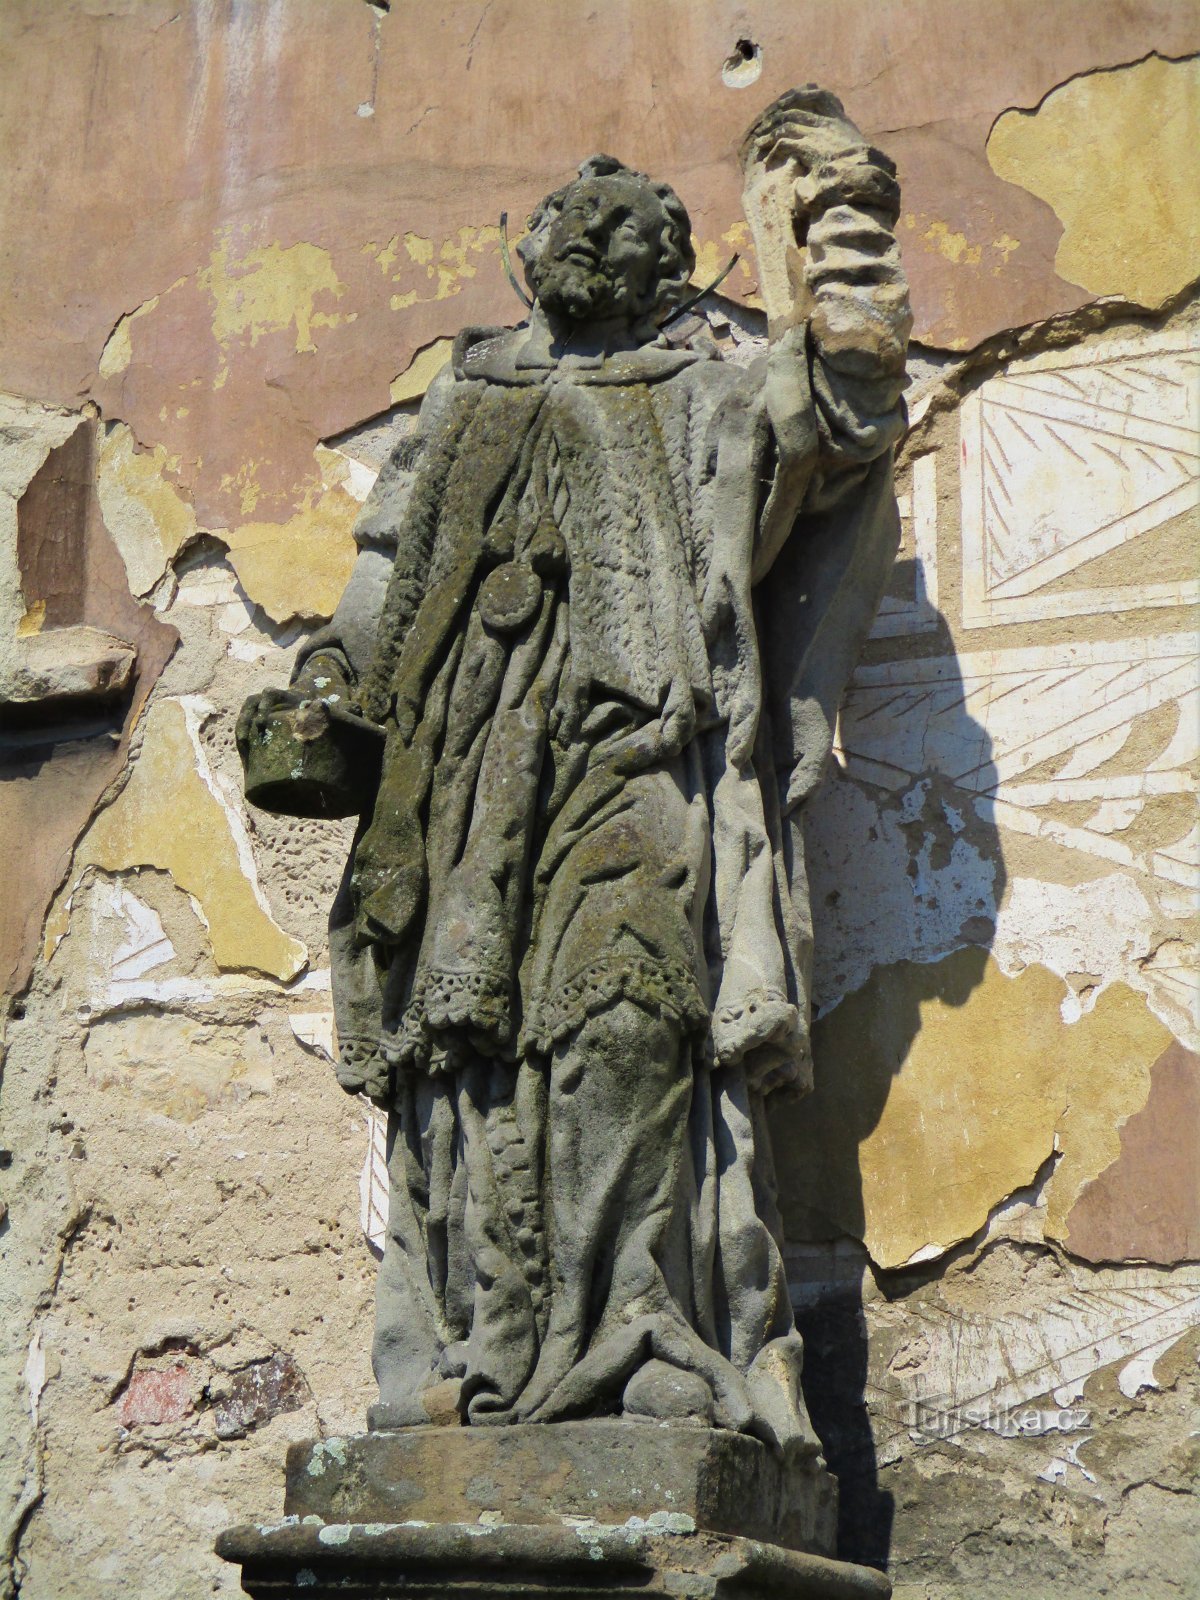 Estátua de S. John of Nepomuck em frente ao moinho (Dašice, 16.5.2020 de maio de XNUMX)